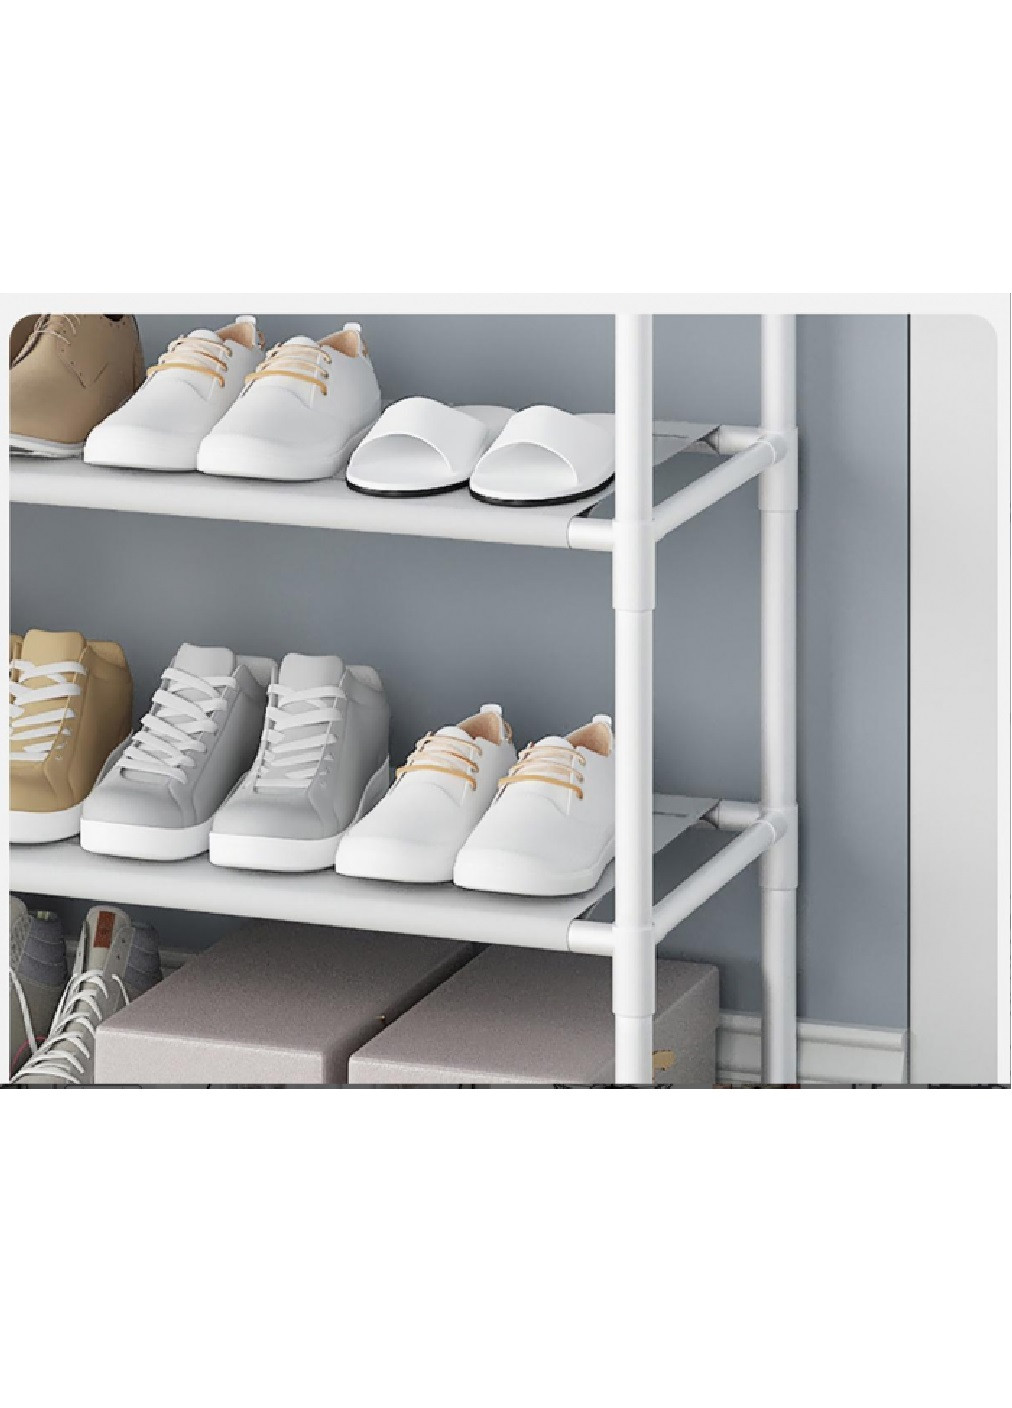 Підлогова стійка вішалка з полицями гачками розбірна компактна для одягу взуття сумок 151х60x30 см (476057-Prob) Біла Unbranded (275991860)